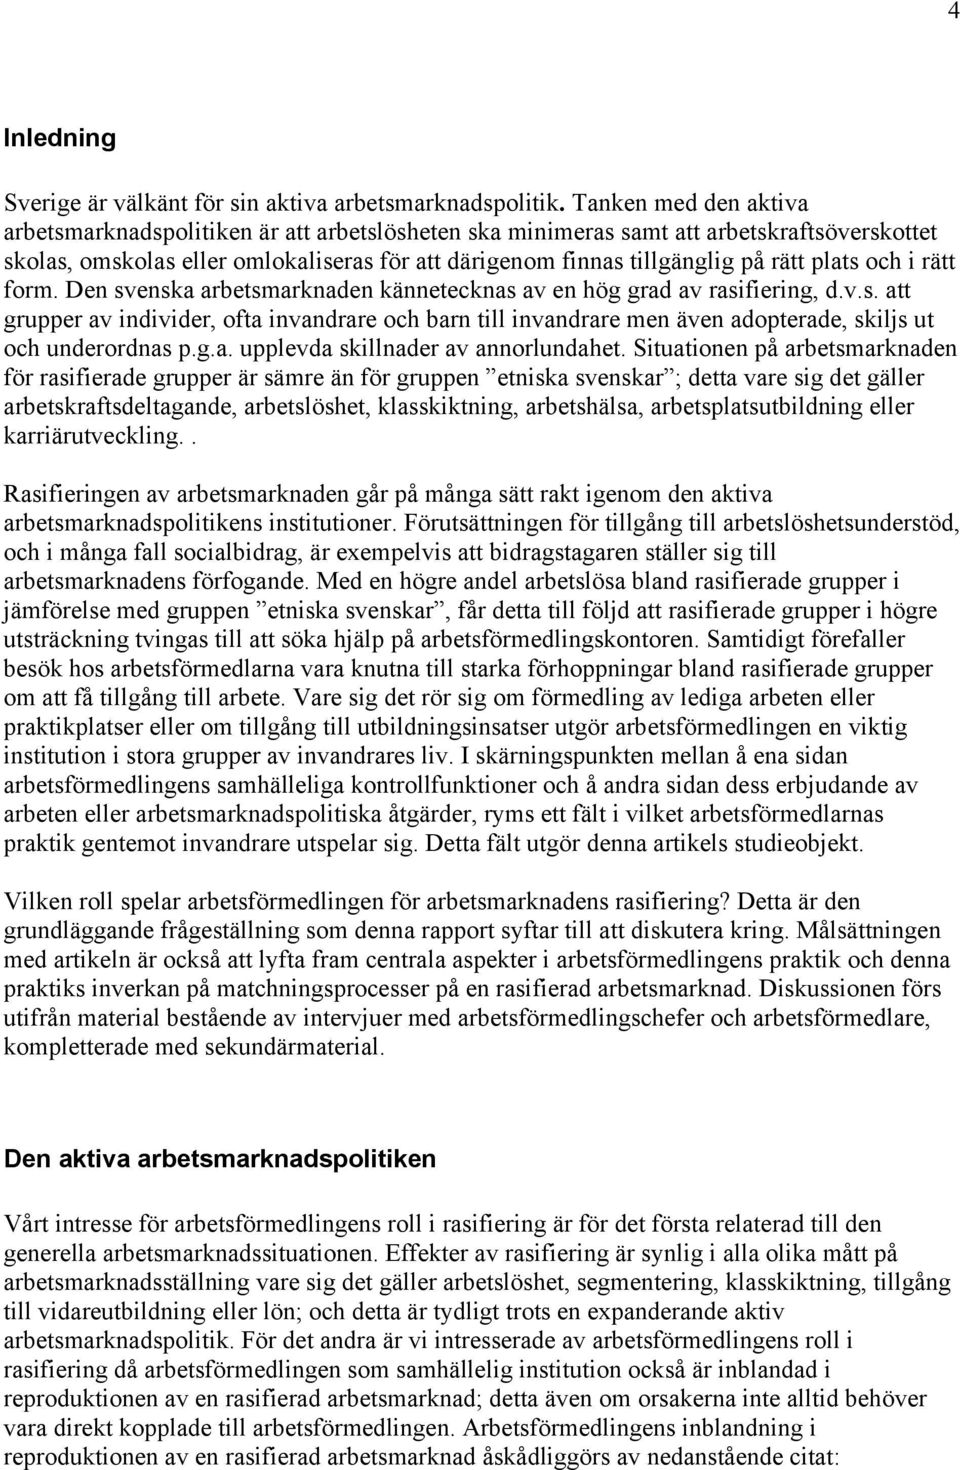 plats och i rätt form. Den svenska arbetsmarknaden kännetecknas av en hög grad av rasifiering, d.v.s. att grupper av individer, ofta invandrare och barn till invandrare men även adopterade, skiljs ut och underordnas p.